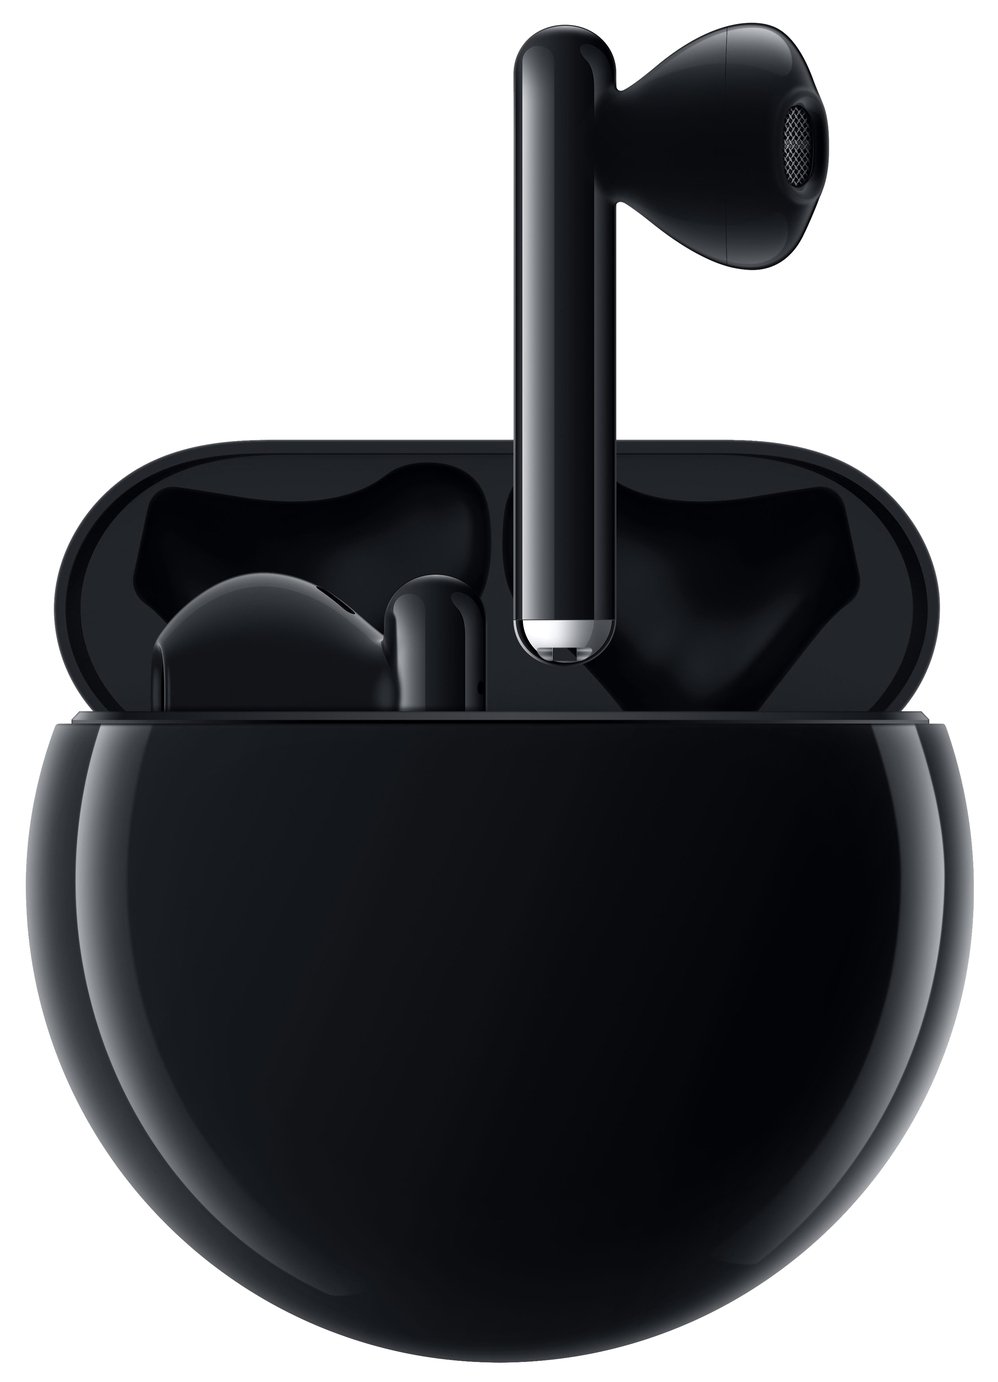 Huawei Freebuds 3 In-Ear True Wireless Earbuds - Black